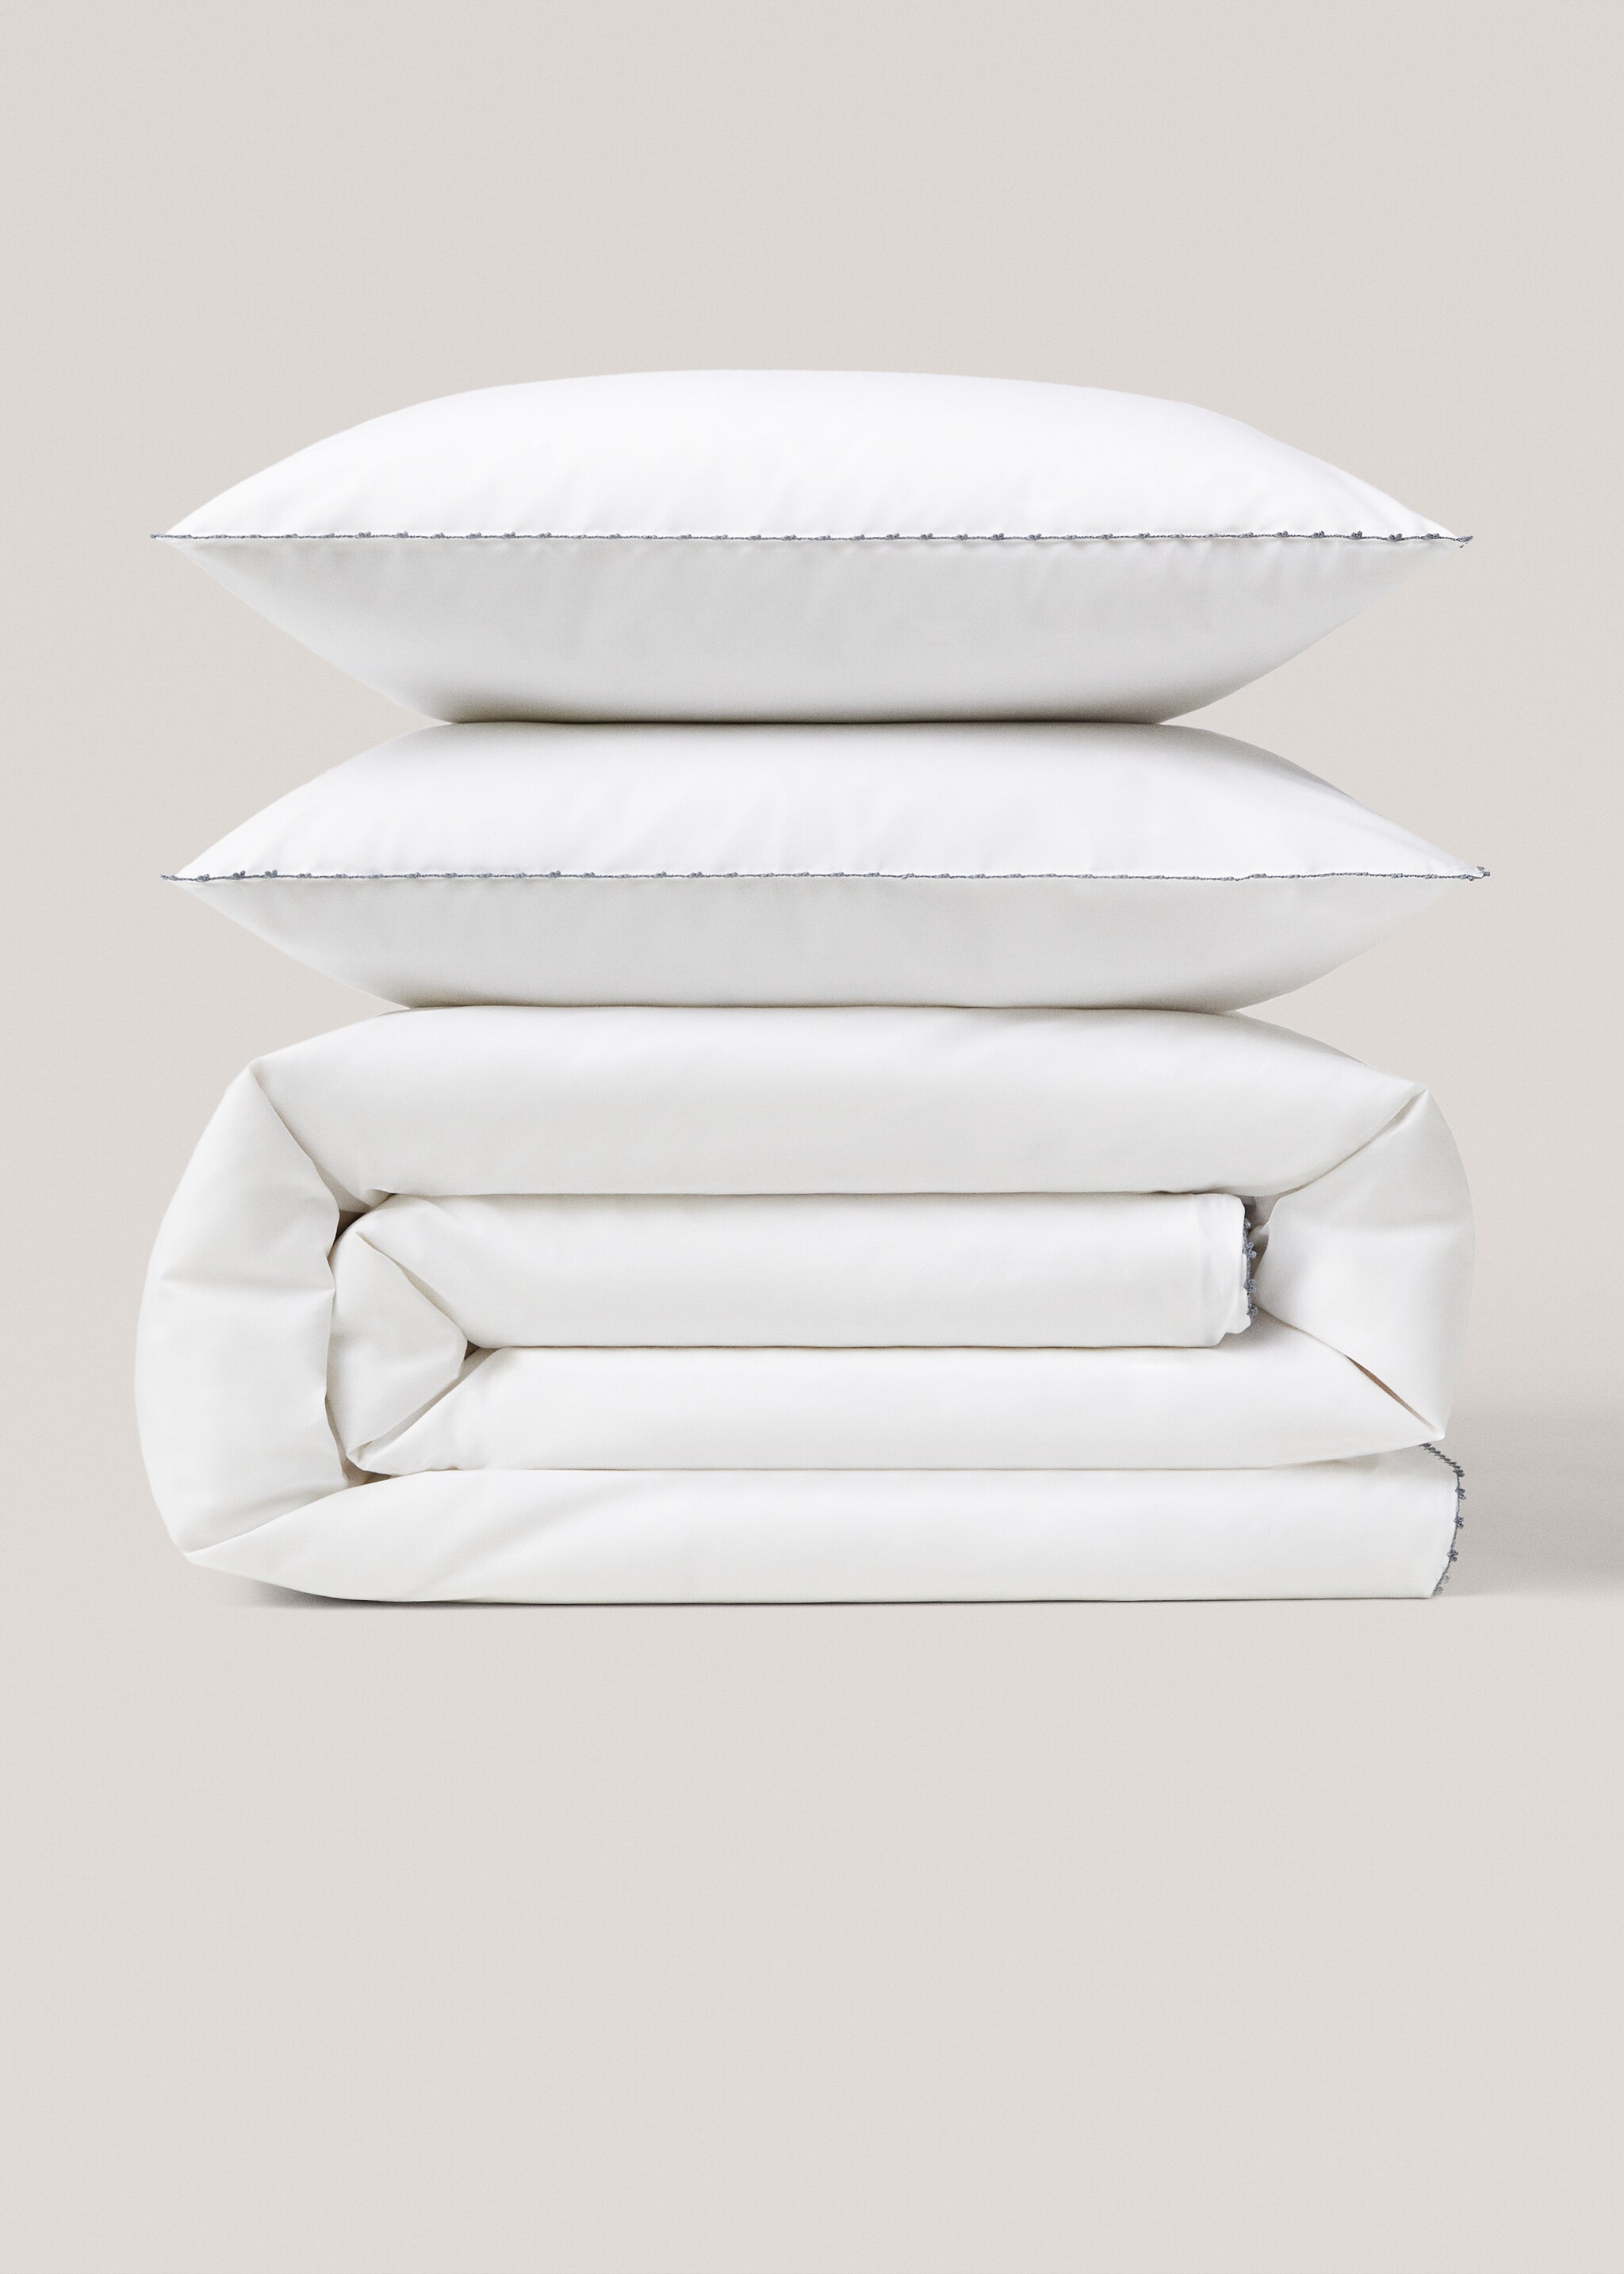 Capa de edredão de algodão com pormenor bordado (cama 180 cm) - Artigo sem modelo